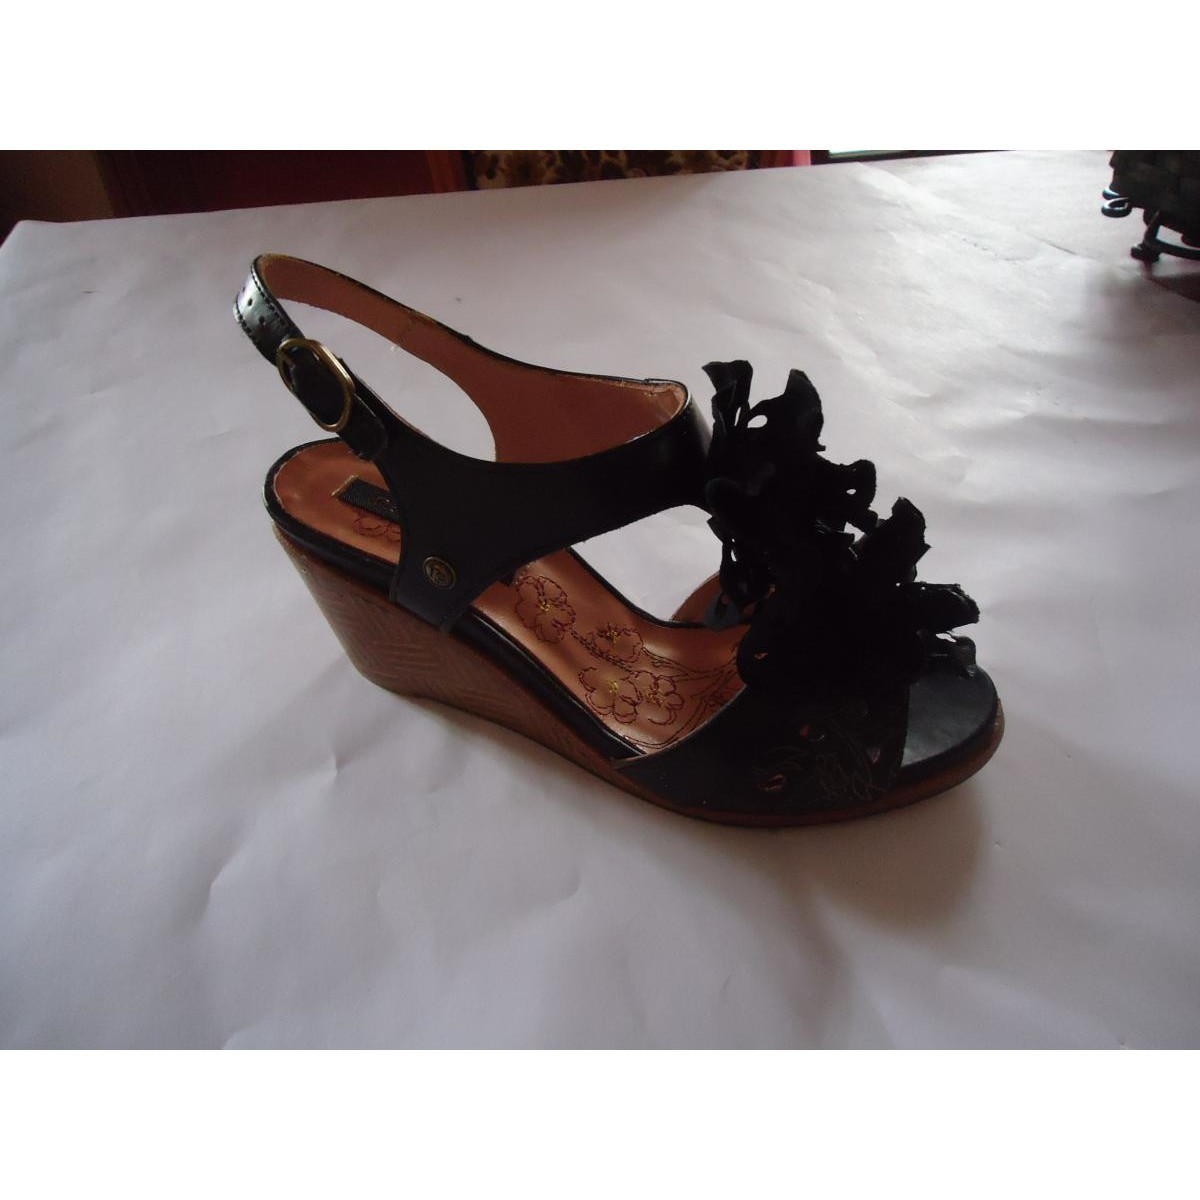 Chaussures Femme Tour de bassin sandale et nu pieds Noir